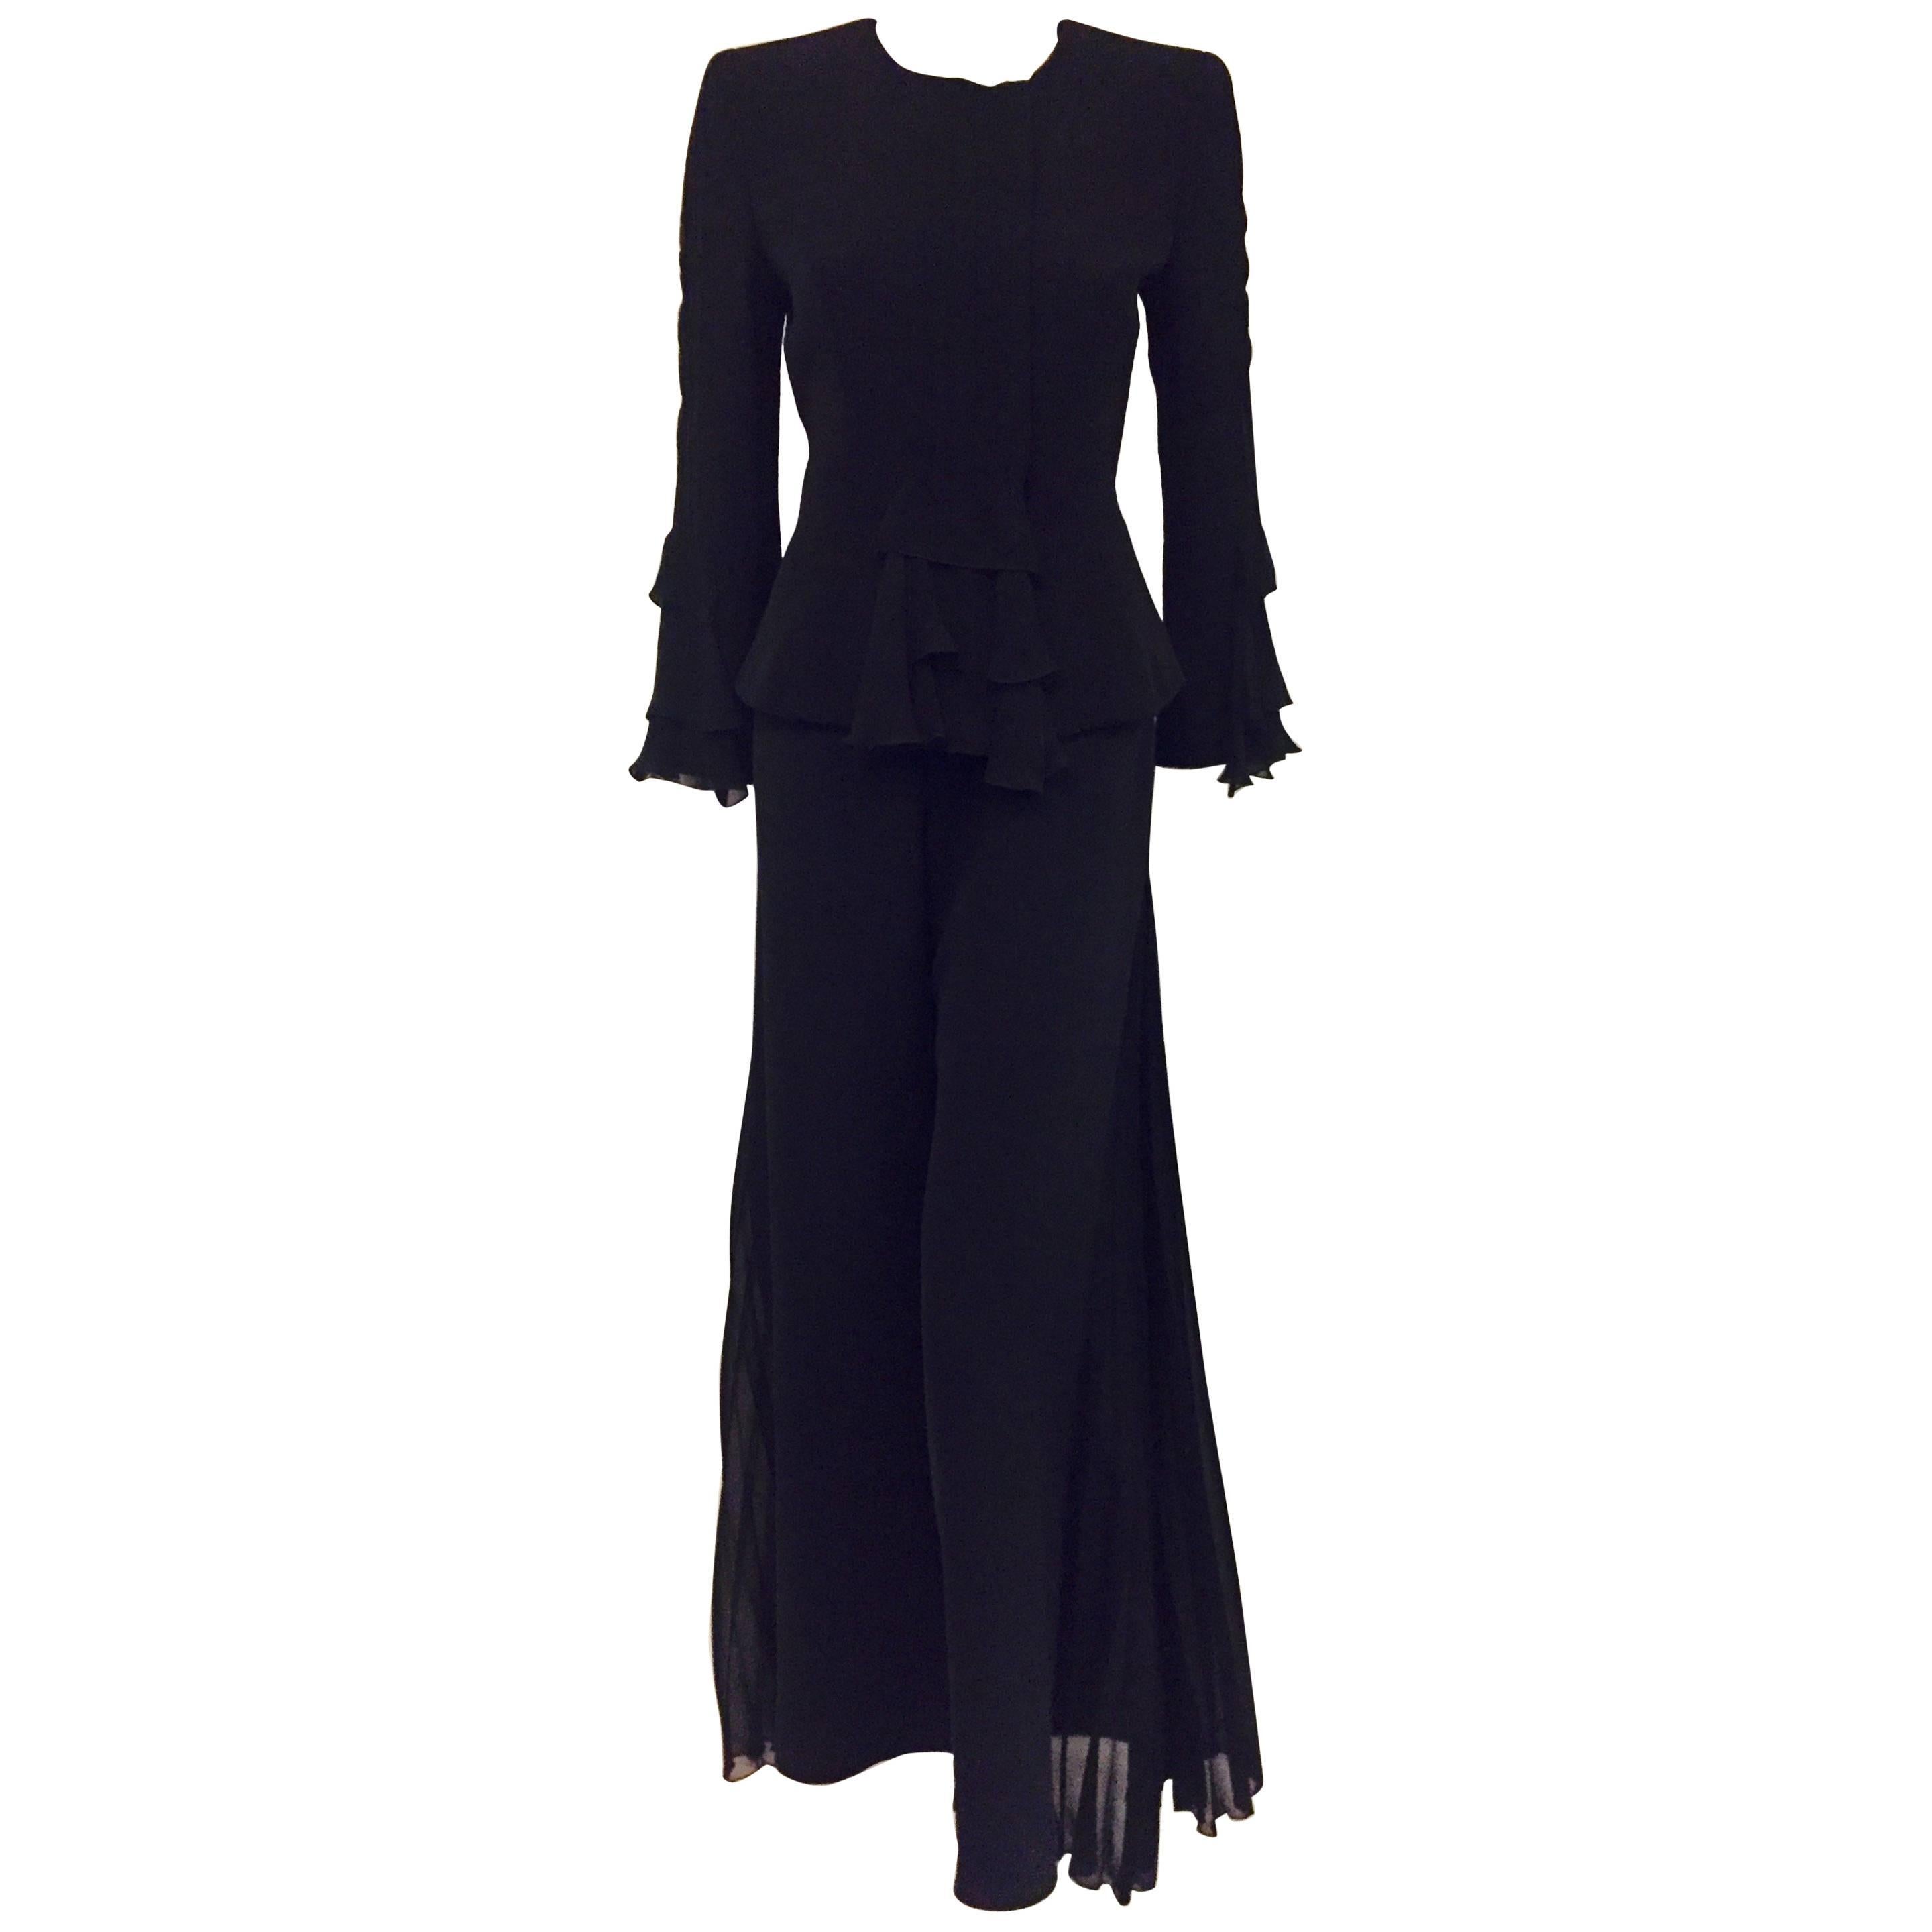 Glamorous Giorgio Armani Black Pleated Silk Pantsuit with Side Pleats on Pants